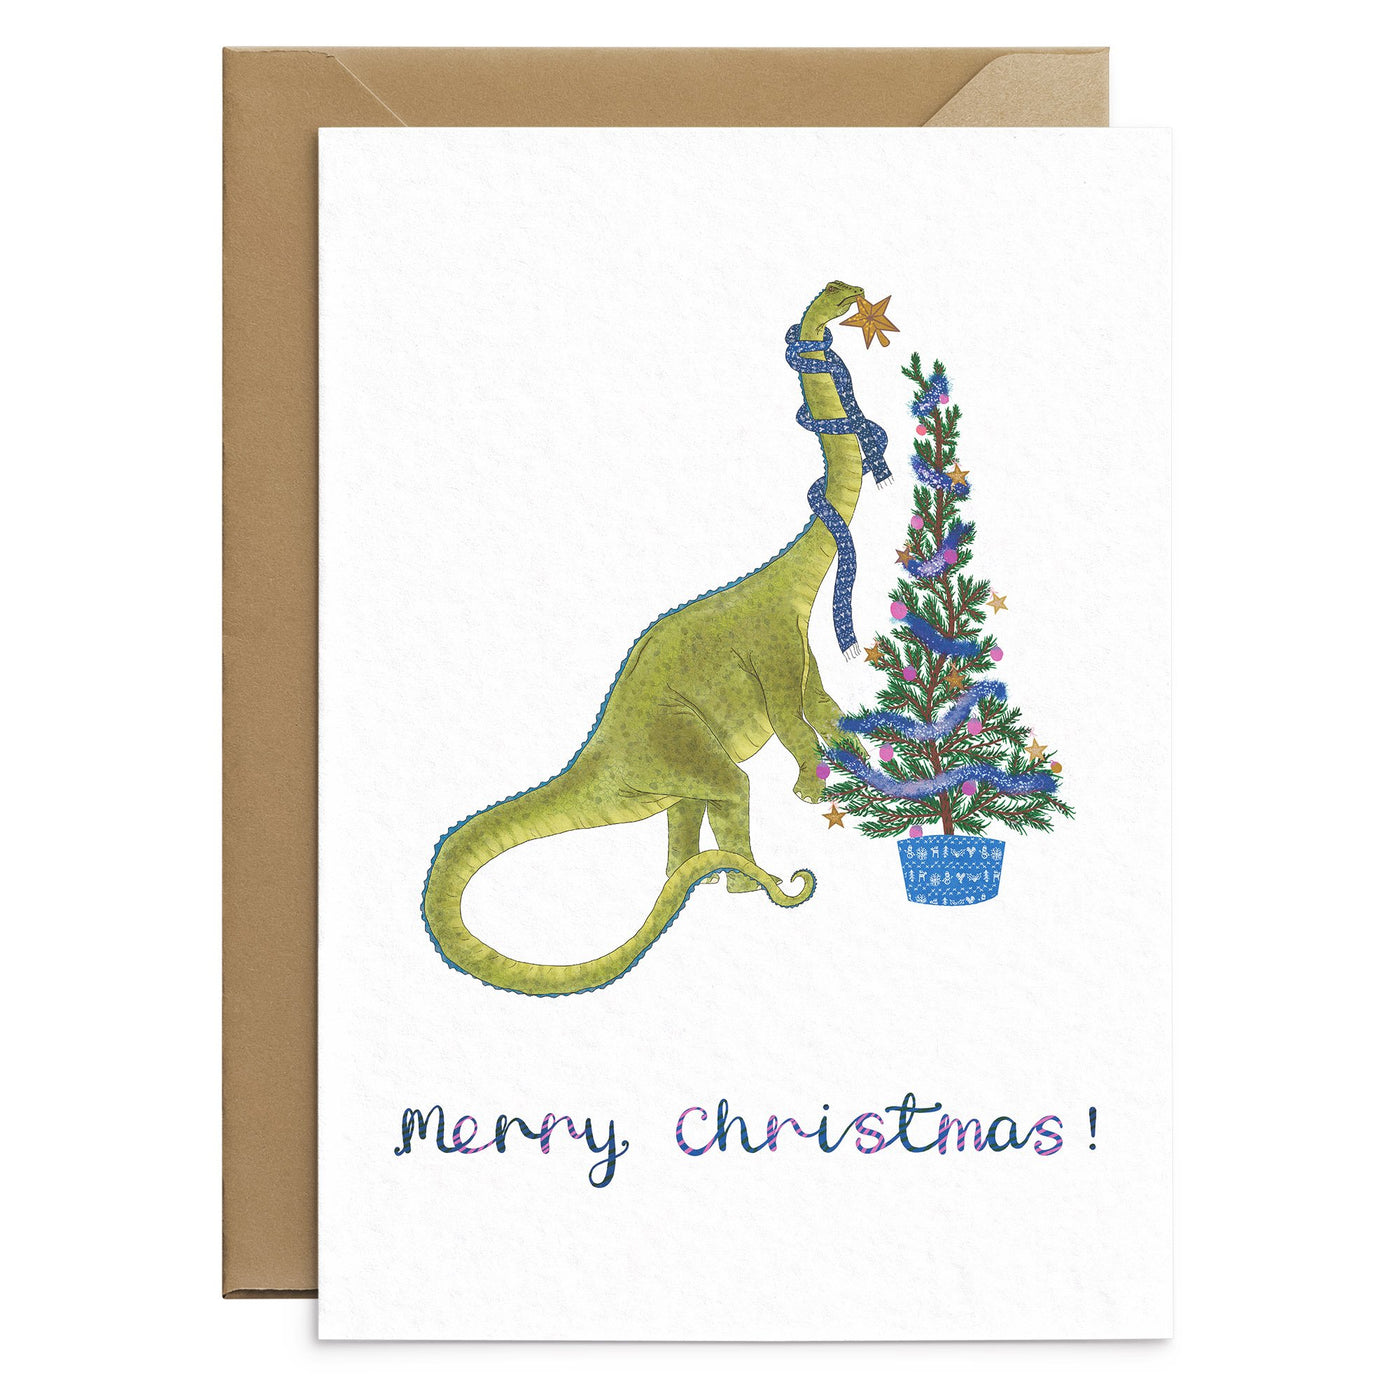 The Diplodocus Dinosaur Christmas Card - Poppins & Co.